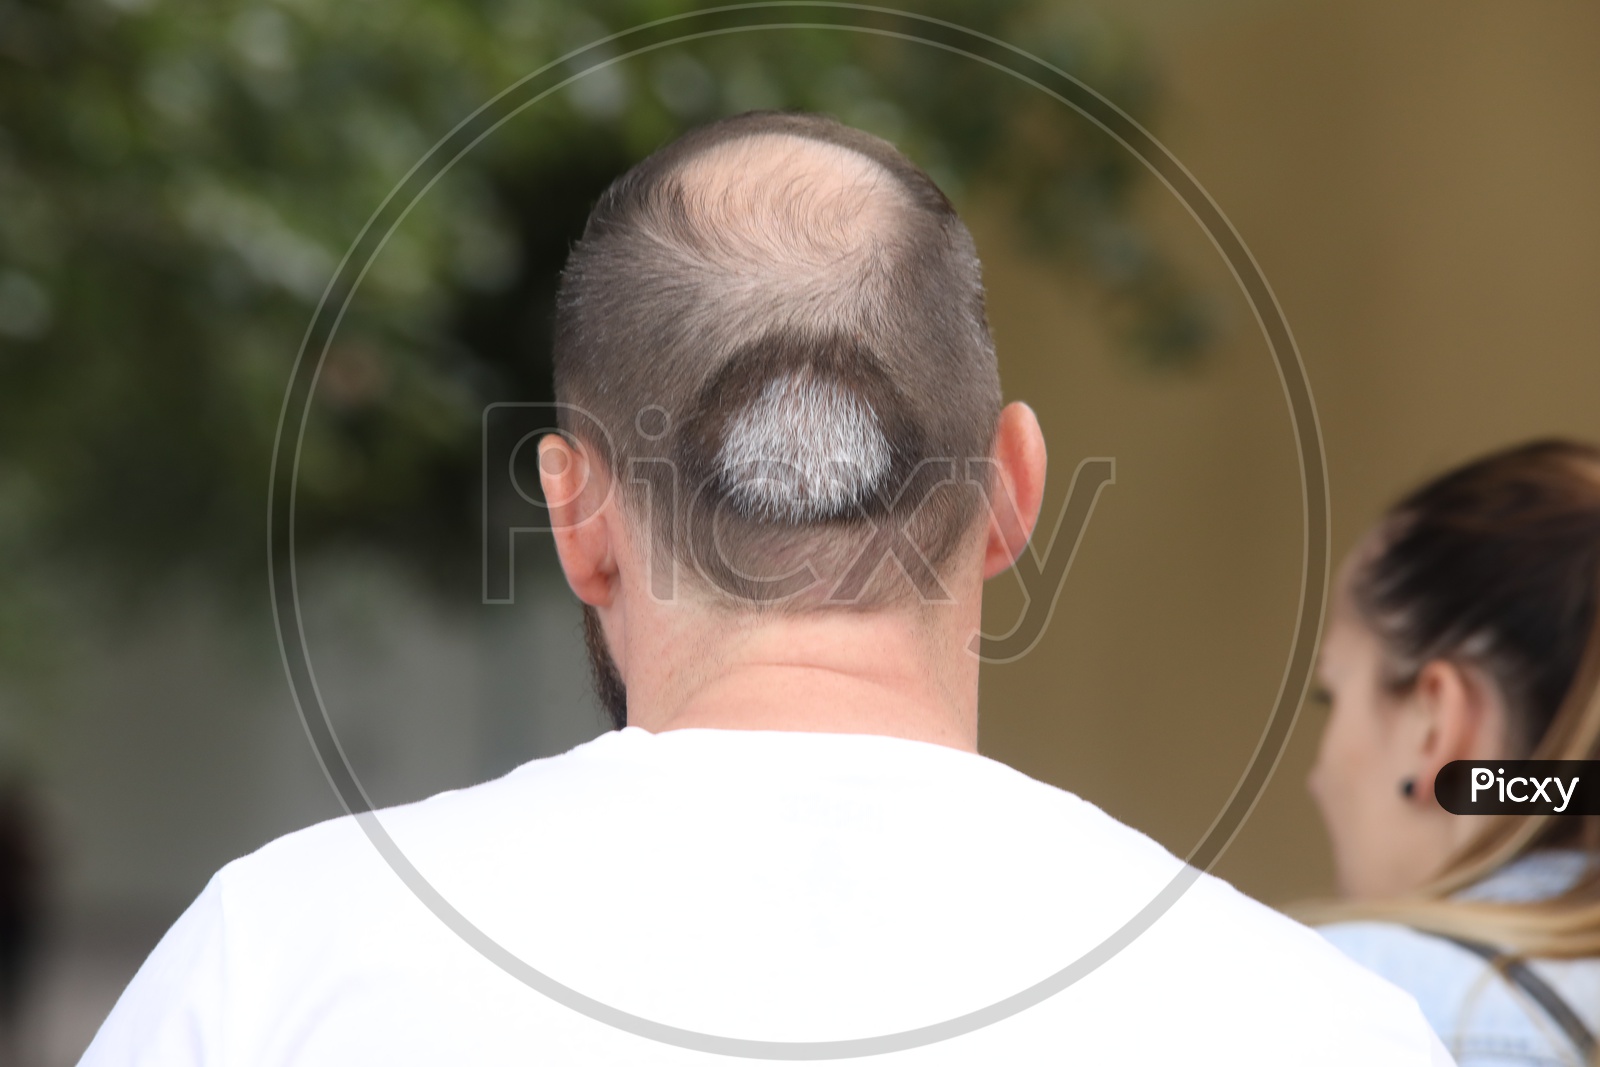 A Bald Man Head Closeup Shot